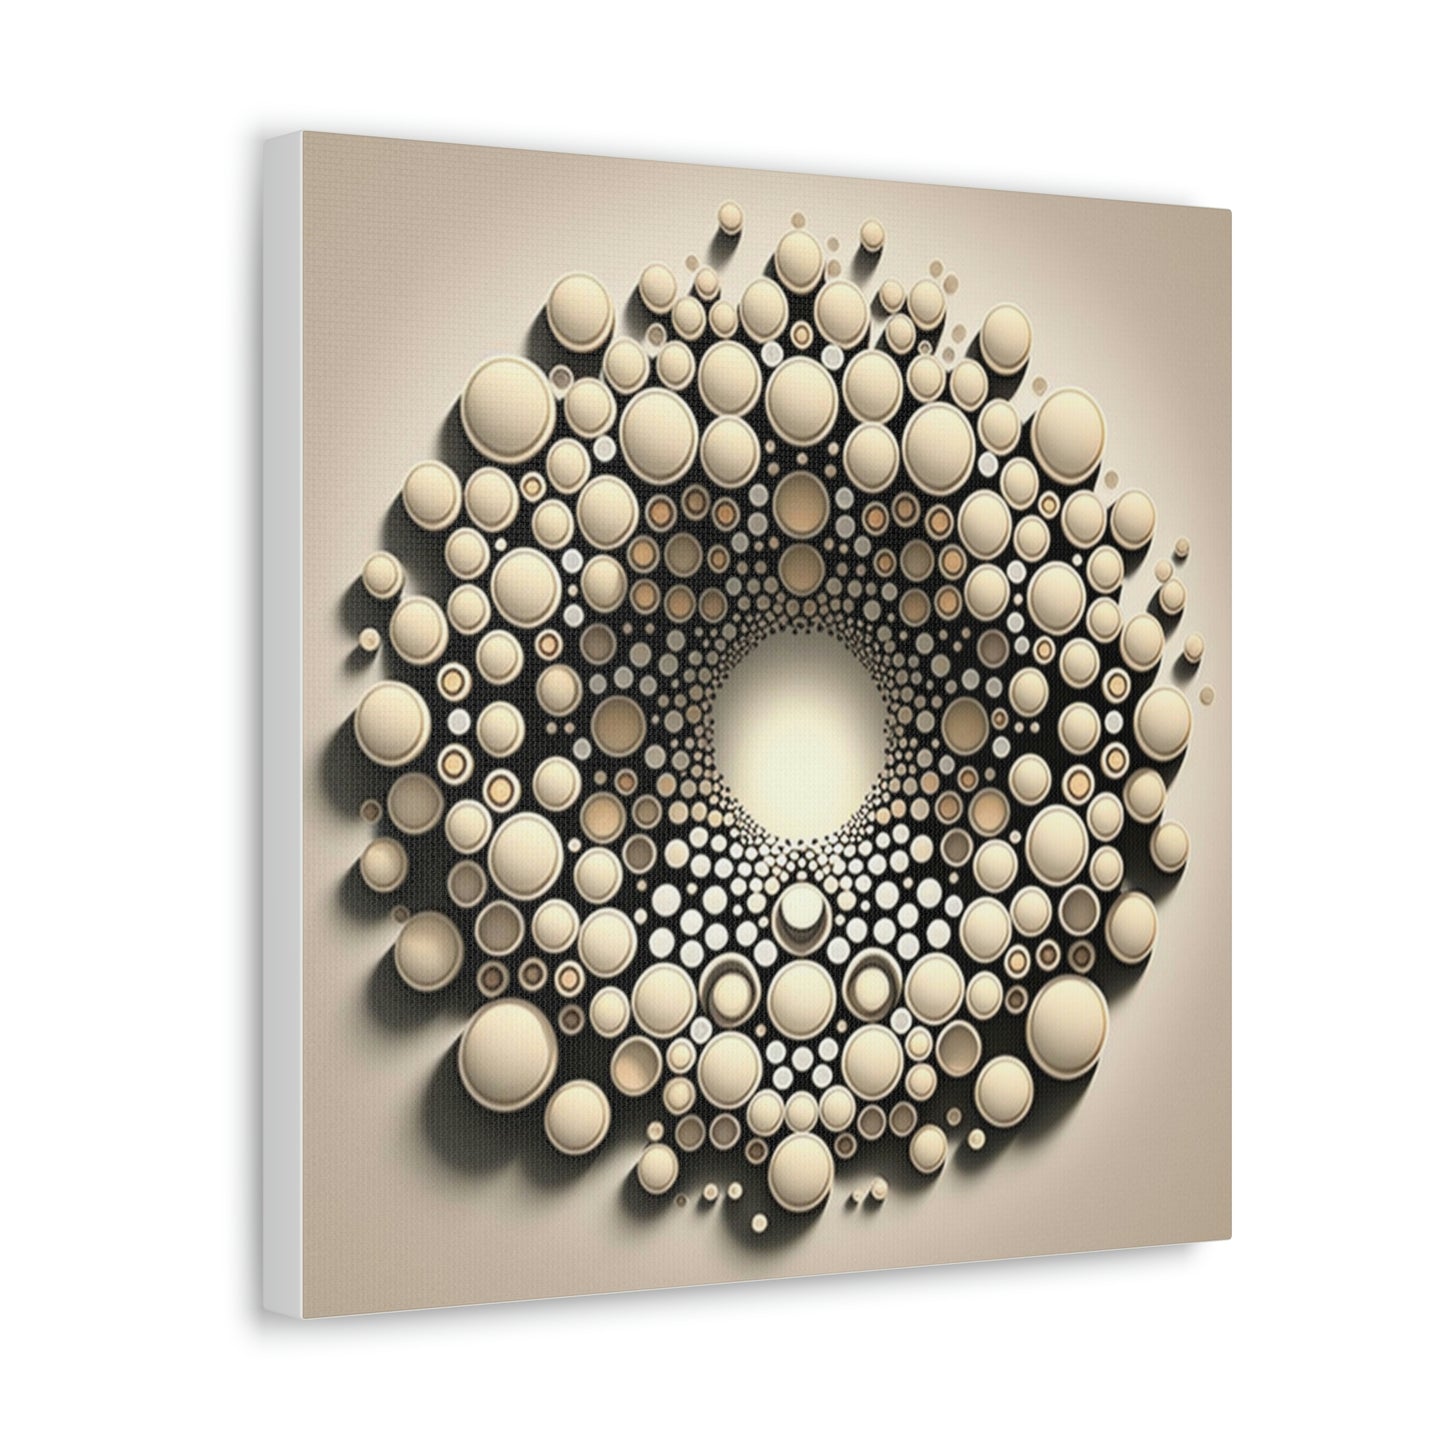 Abstract 3d circle art